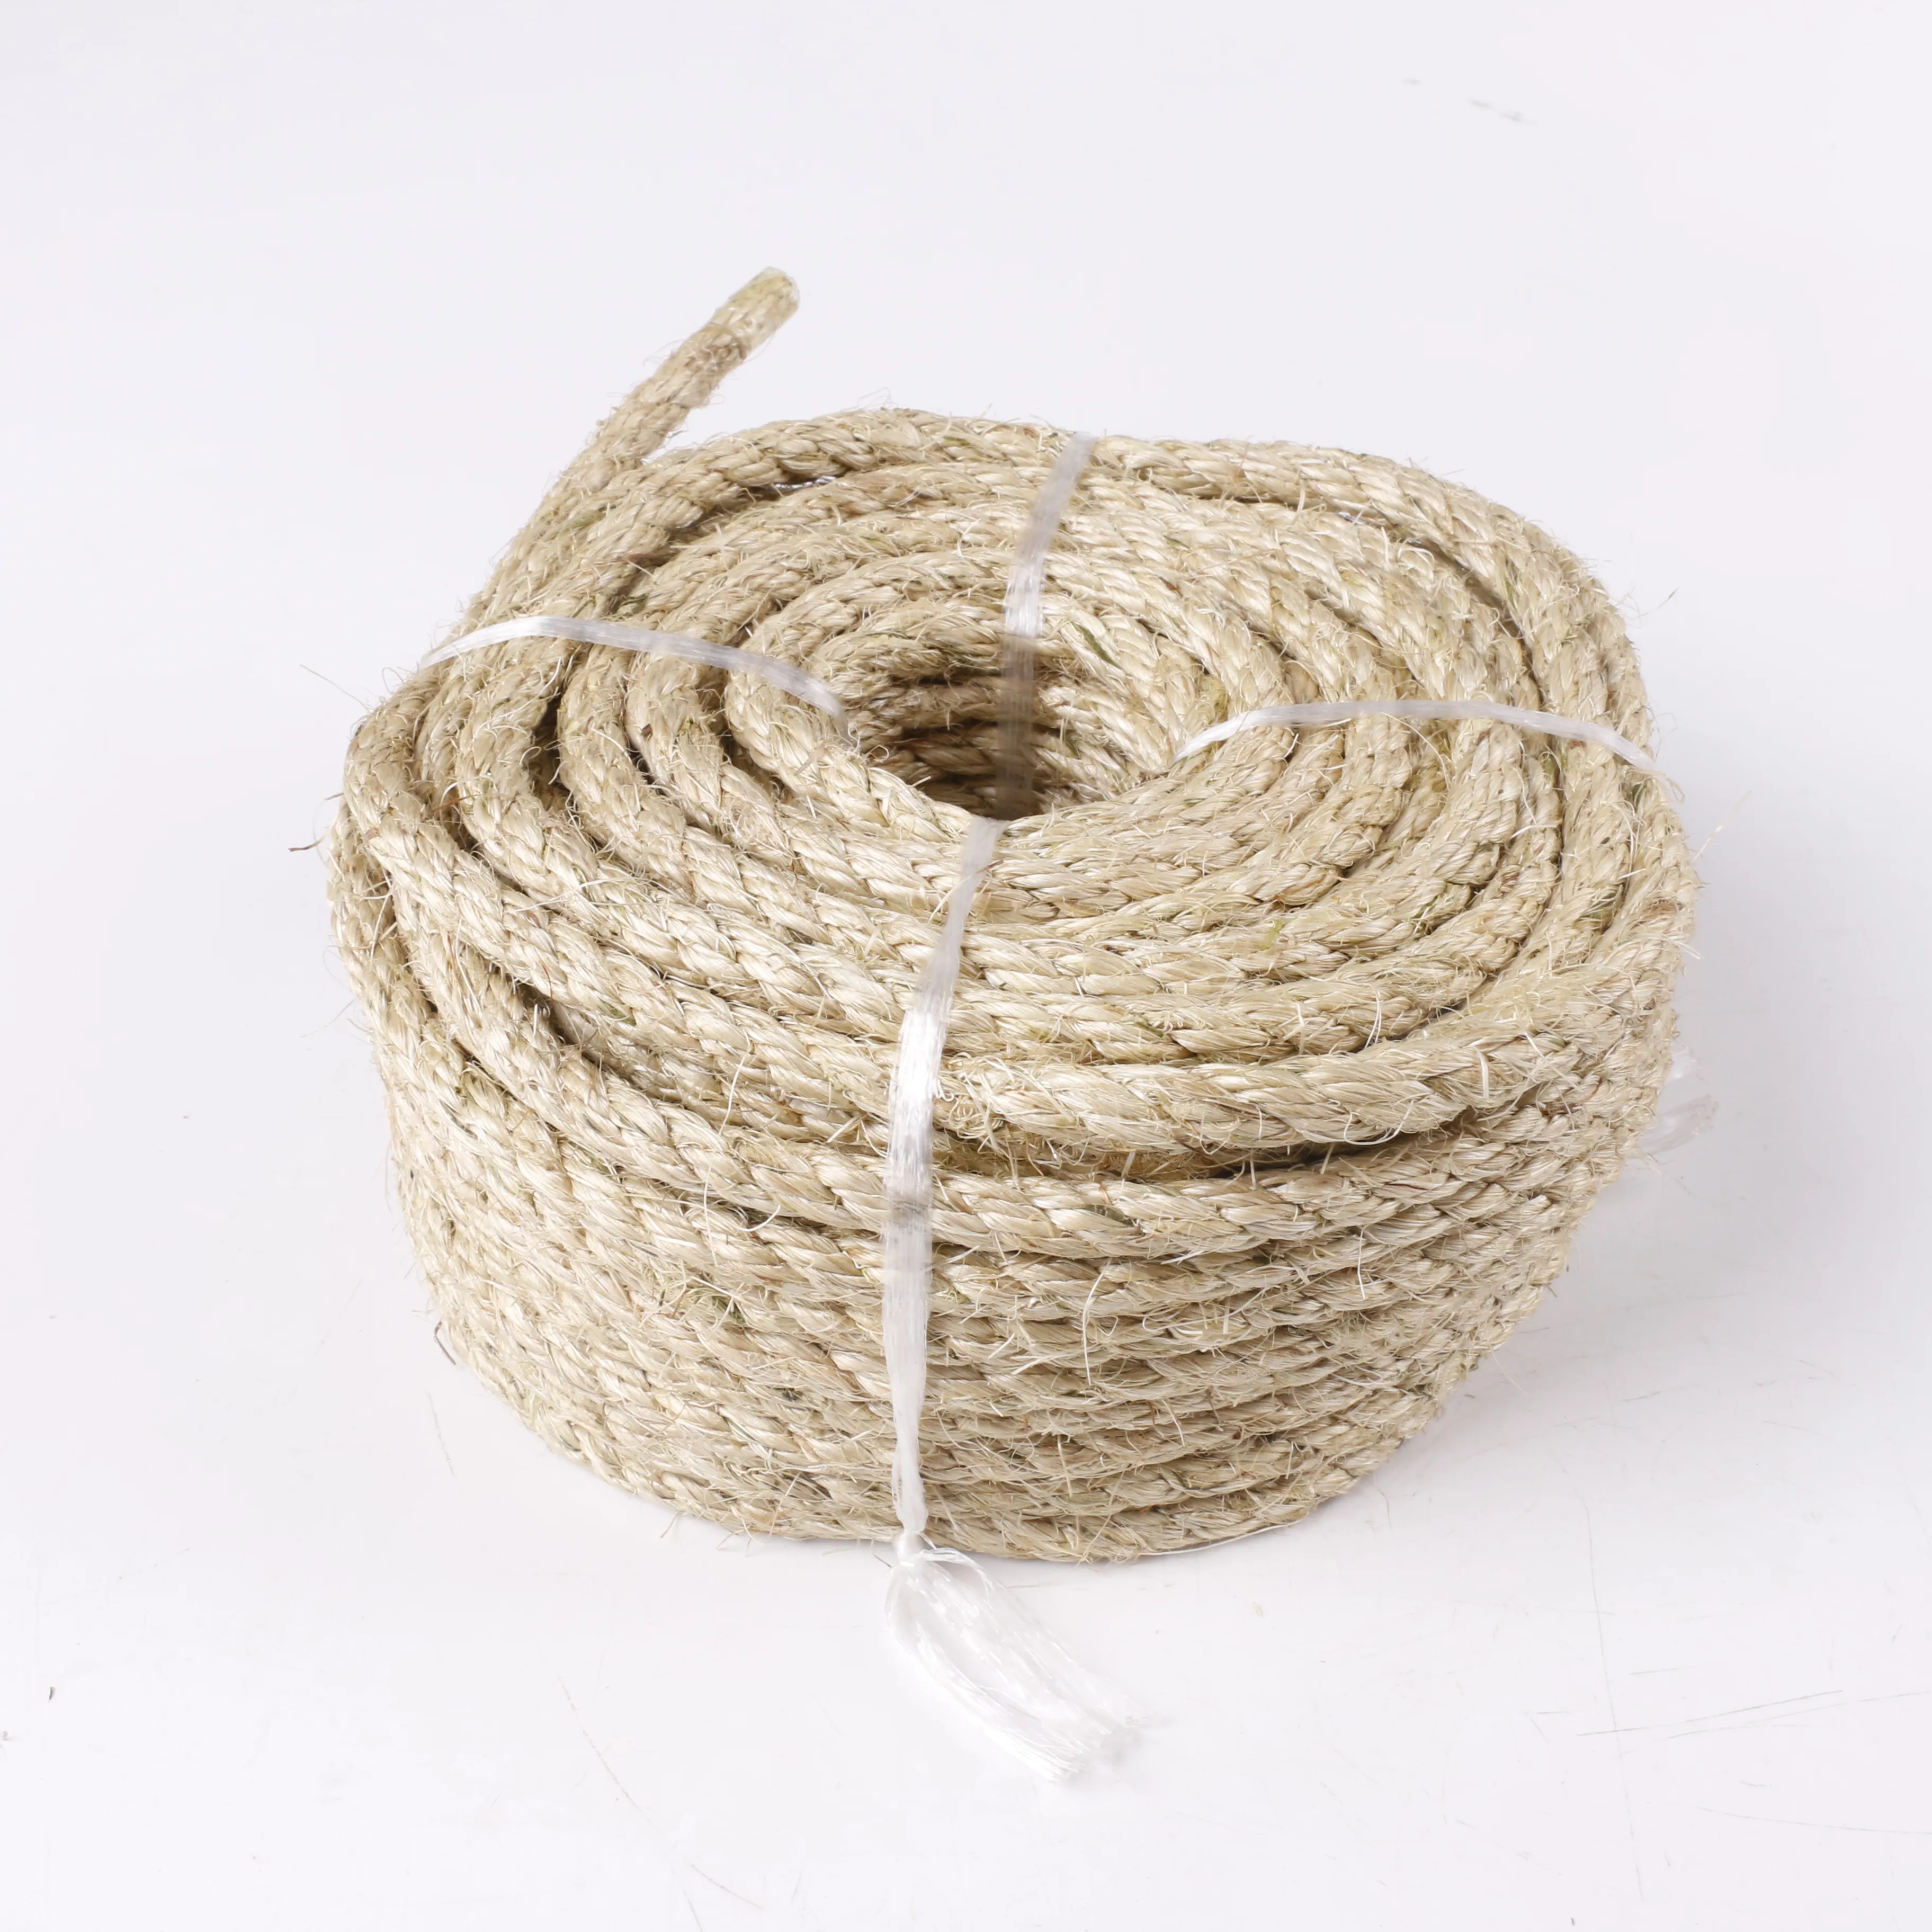 Fabricant offre spéciale 100% matériau naturel Durable bricolage décoration corde de Sisal corde de Jute tordue corde de Sisal